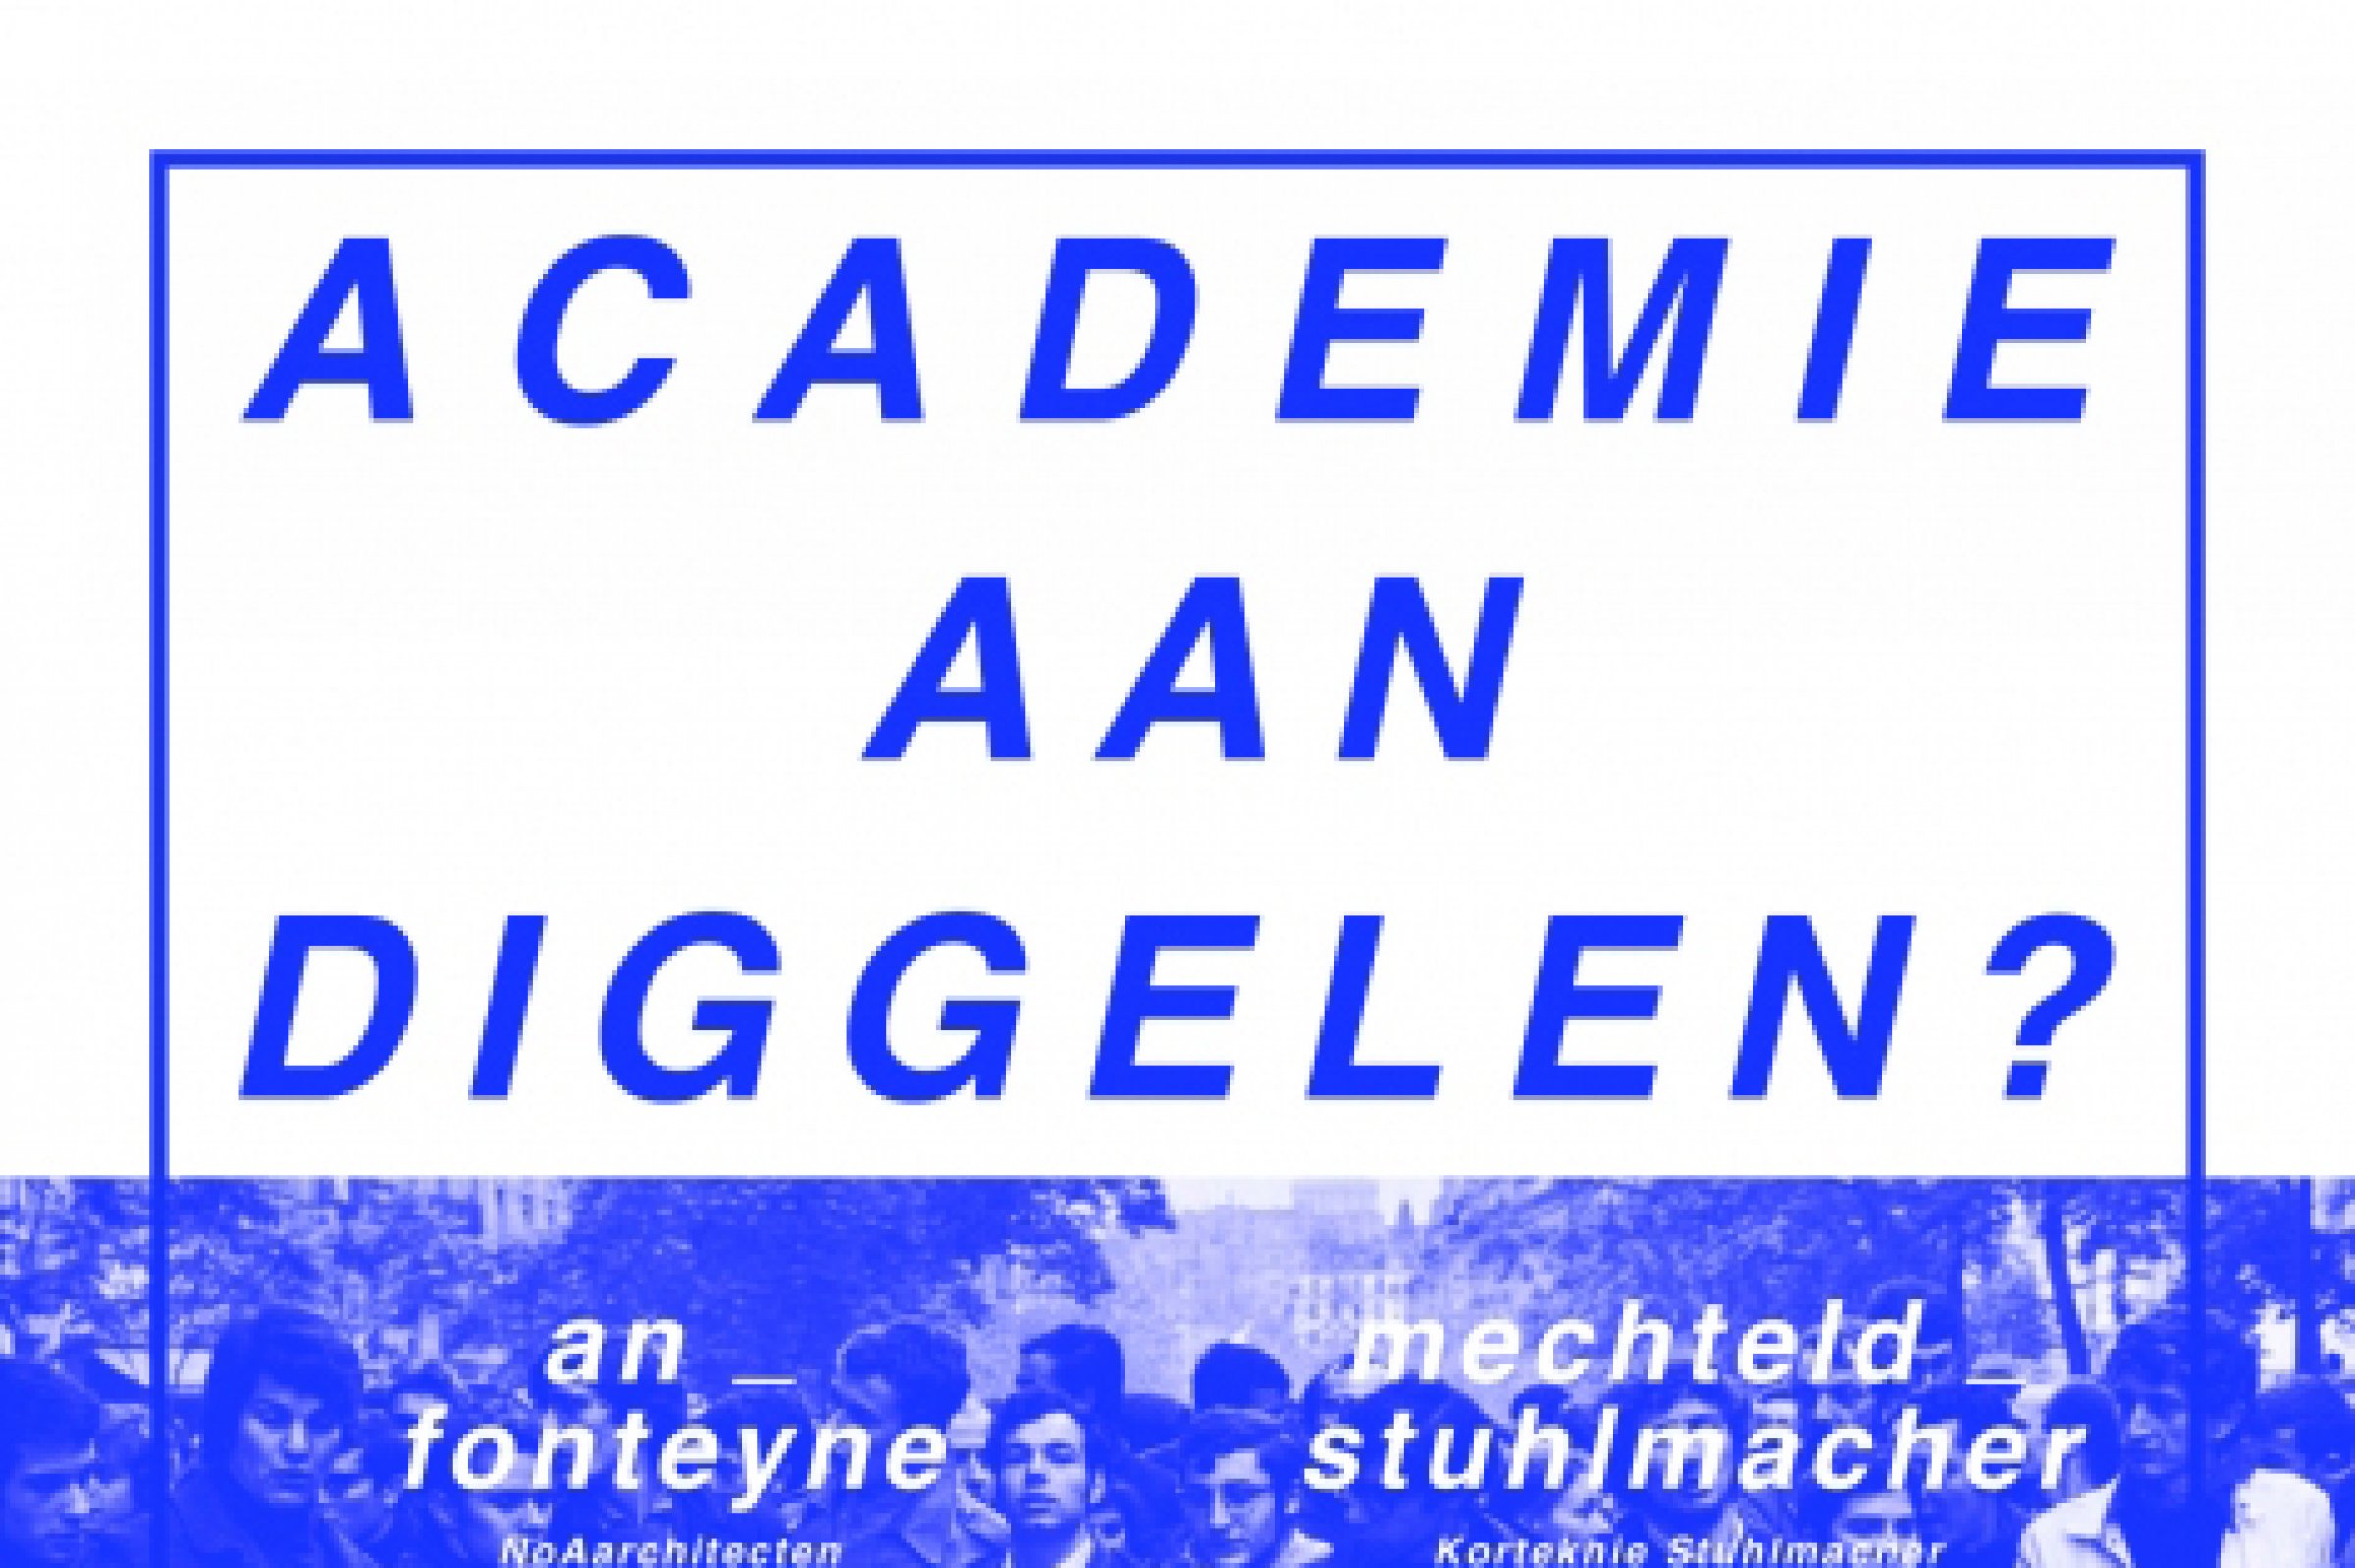 170301-academie_aan_diggelen